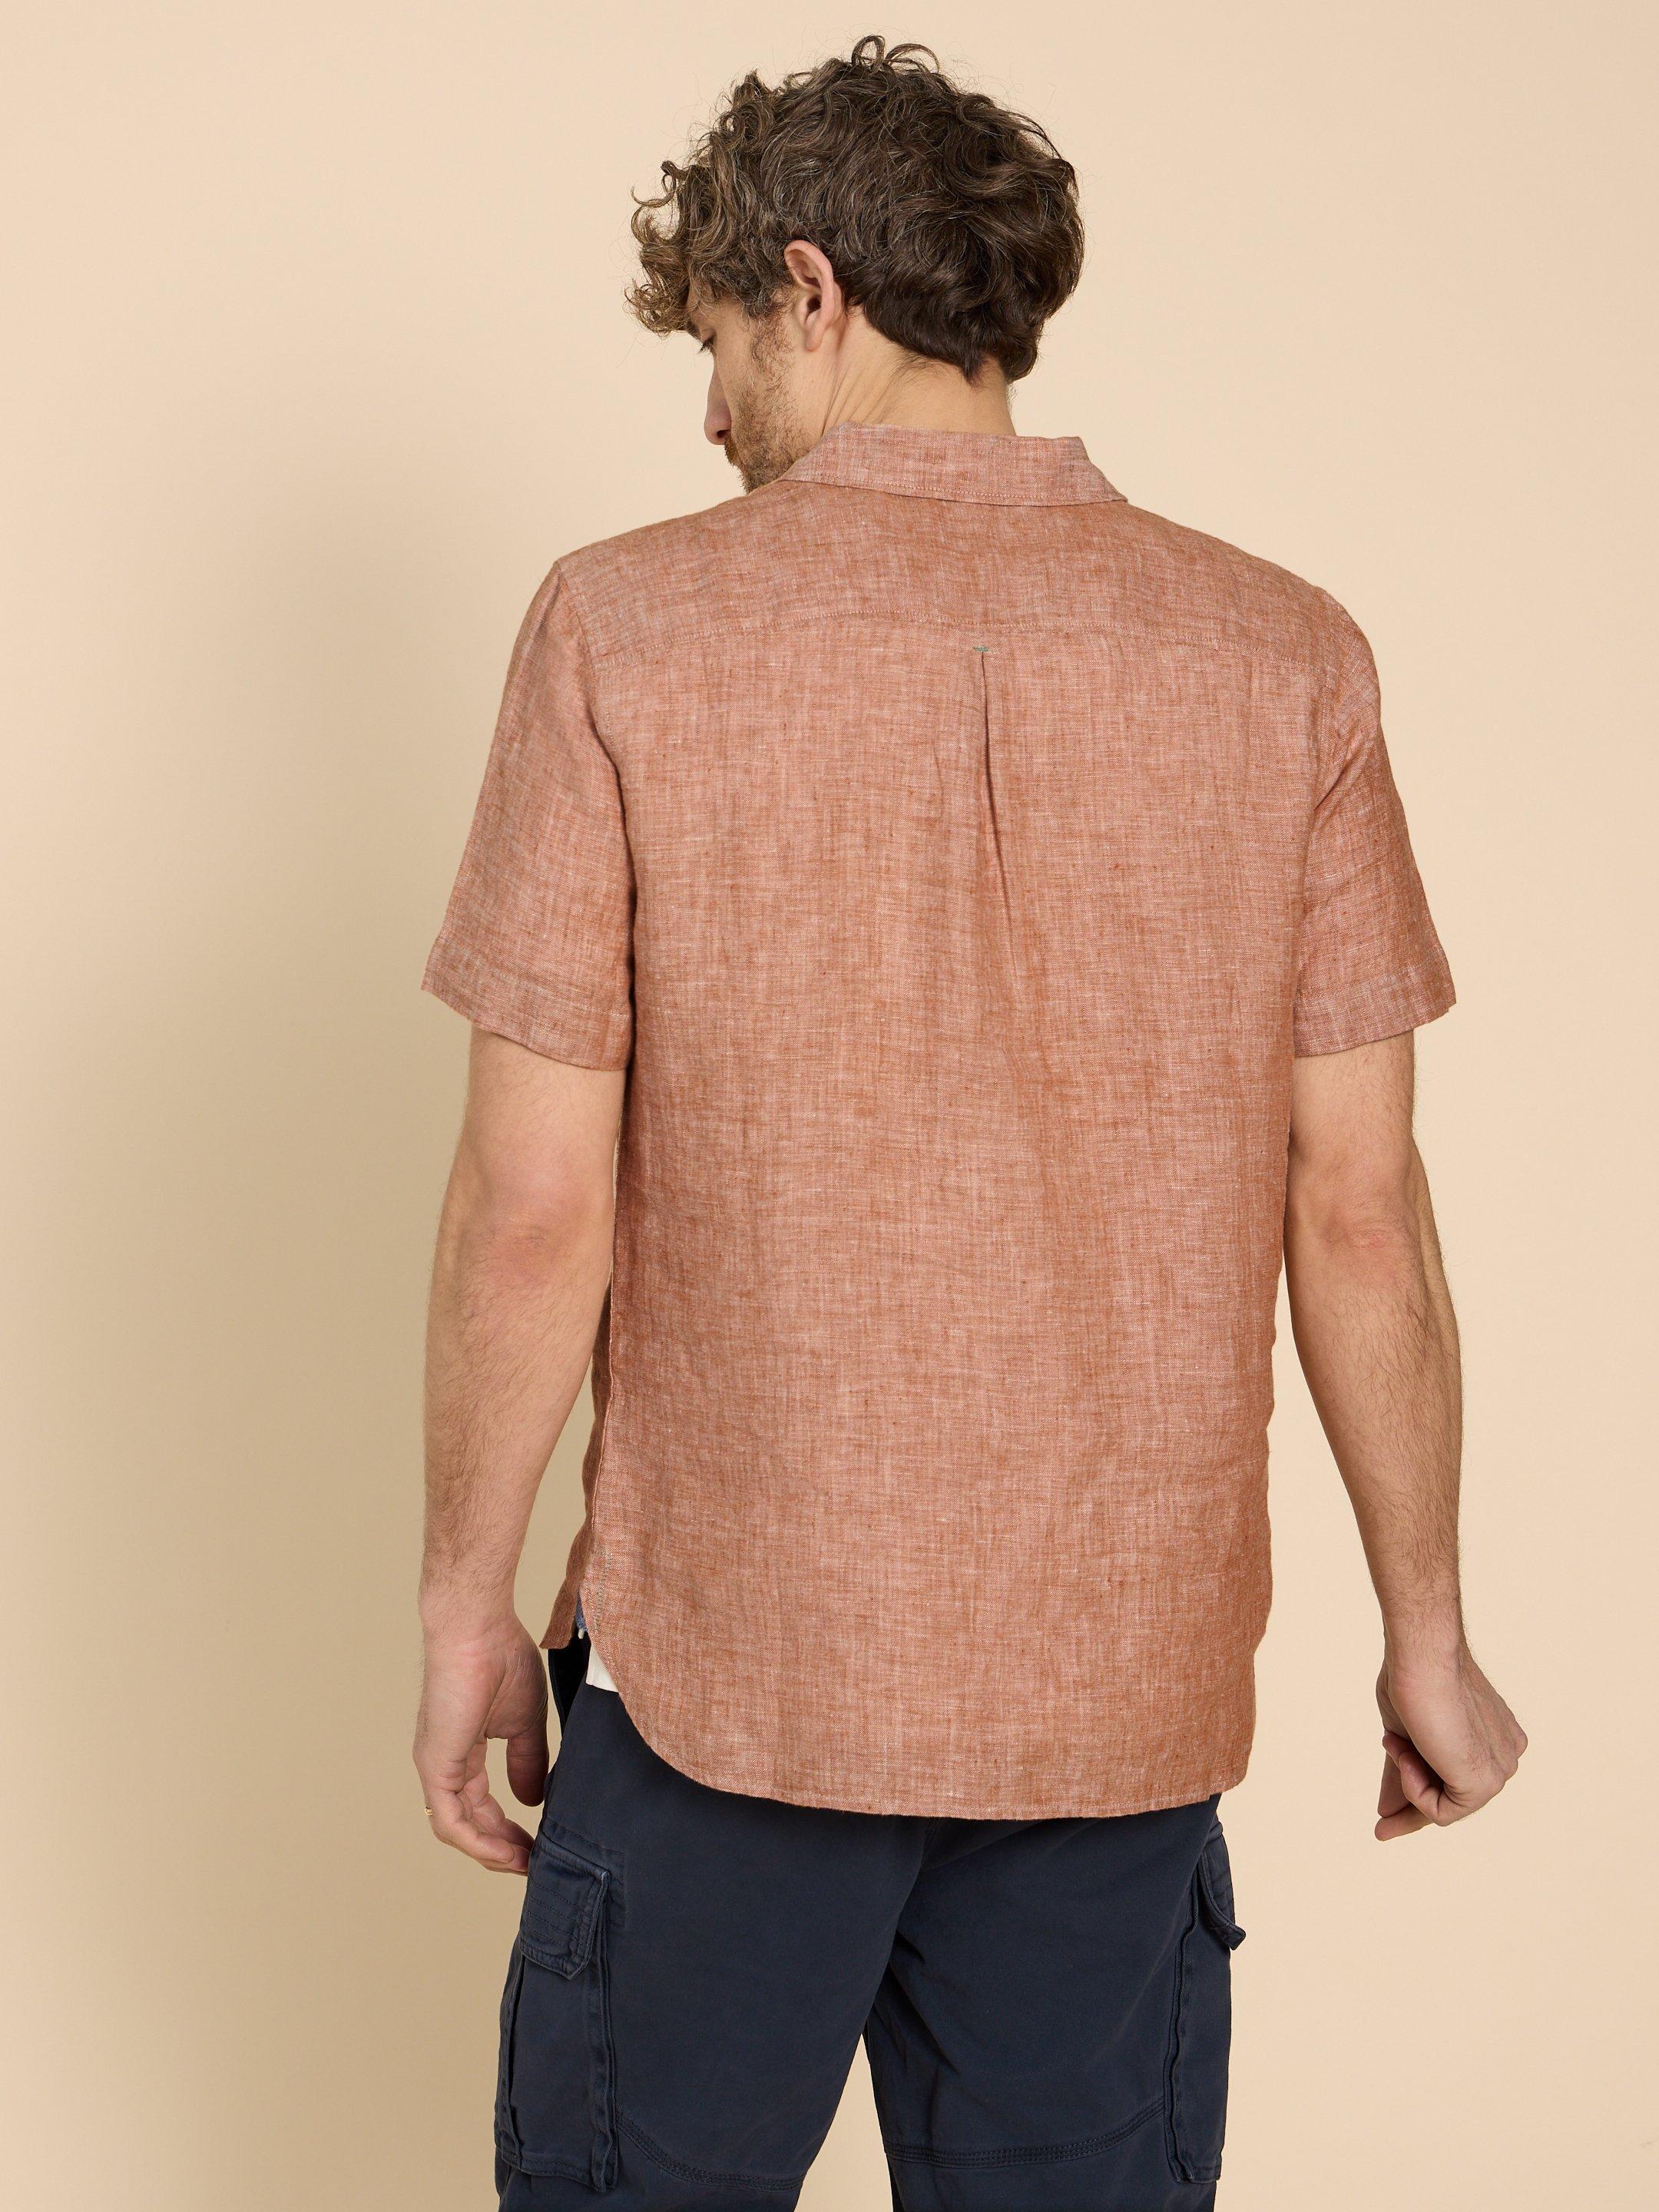 Pembroke SS Linen Shirt in DK ORANGE - MODEL BACK